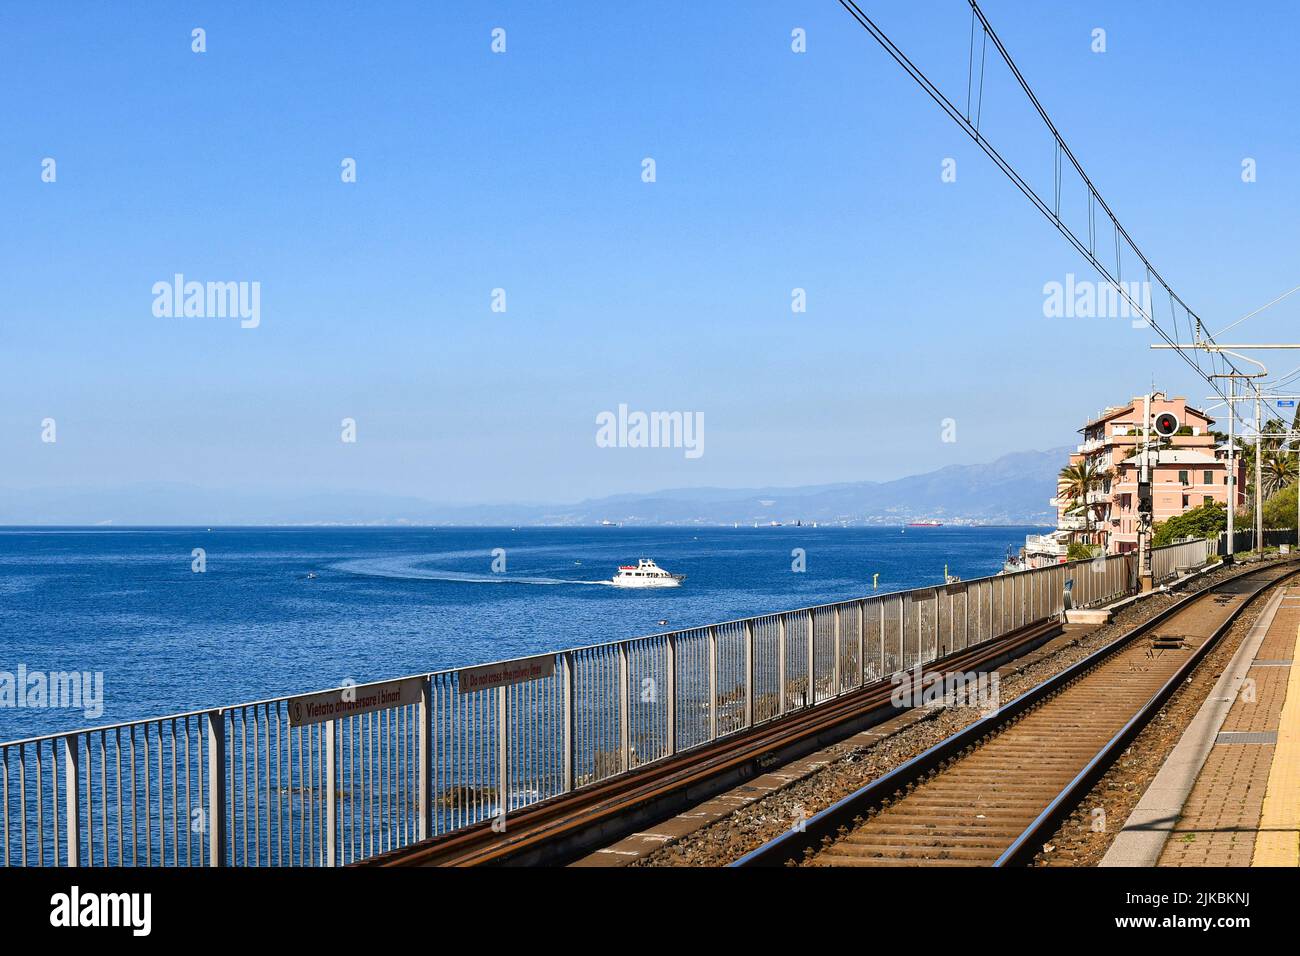 Voies ferrées de la gare de Genova Nervi donnant sur le golfe du Paradis de la Riviera italienne, Nervi, Genova, Ligurie, Italie Banque D'Images